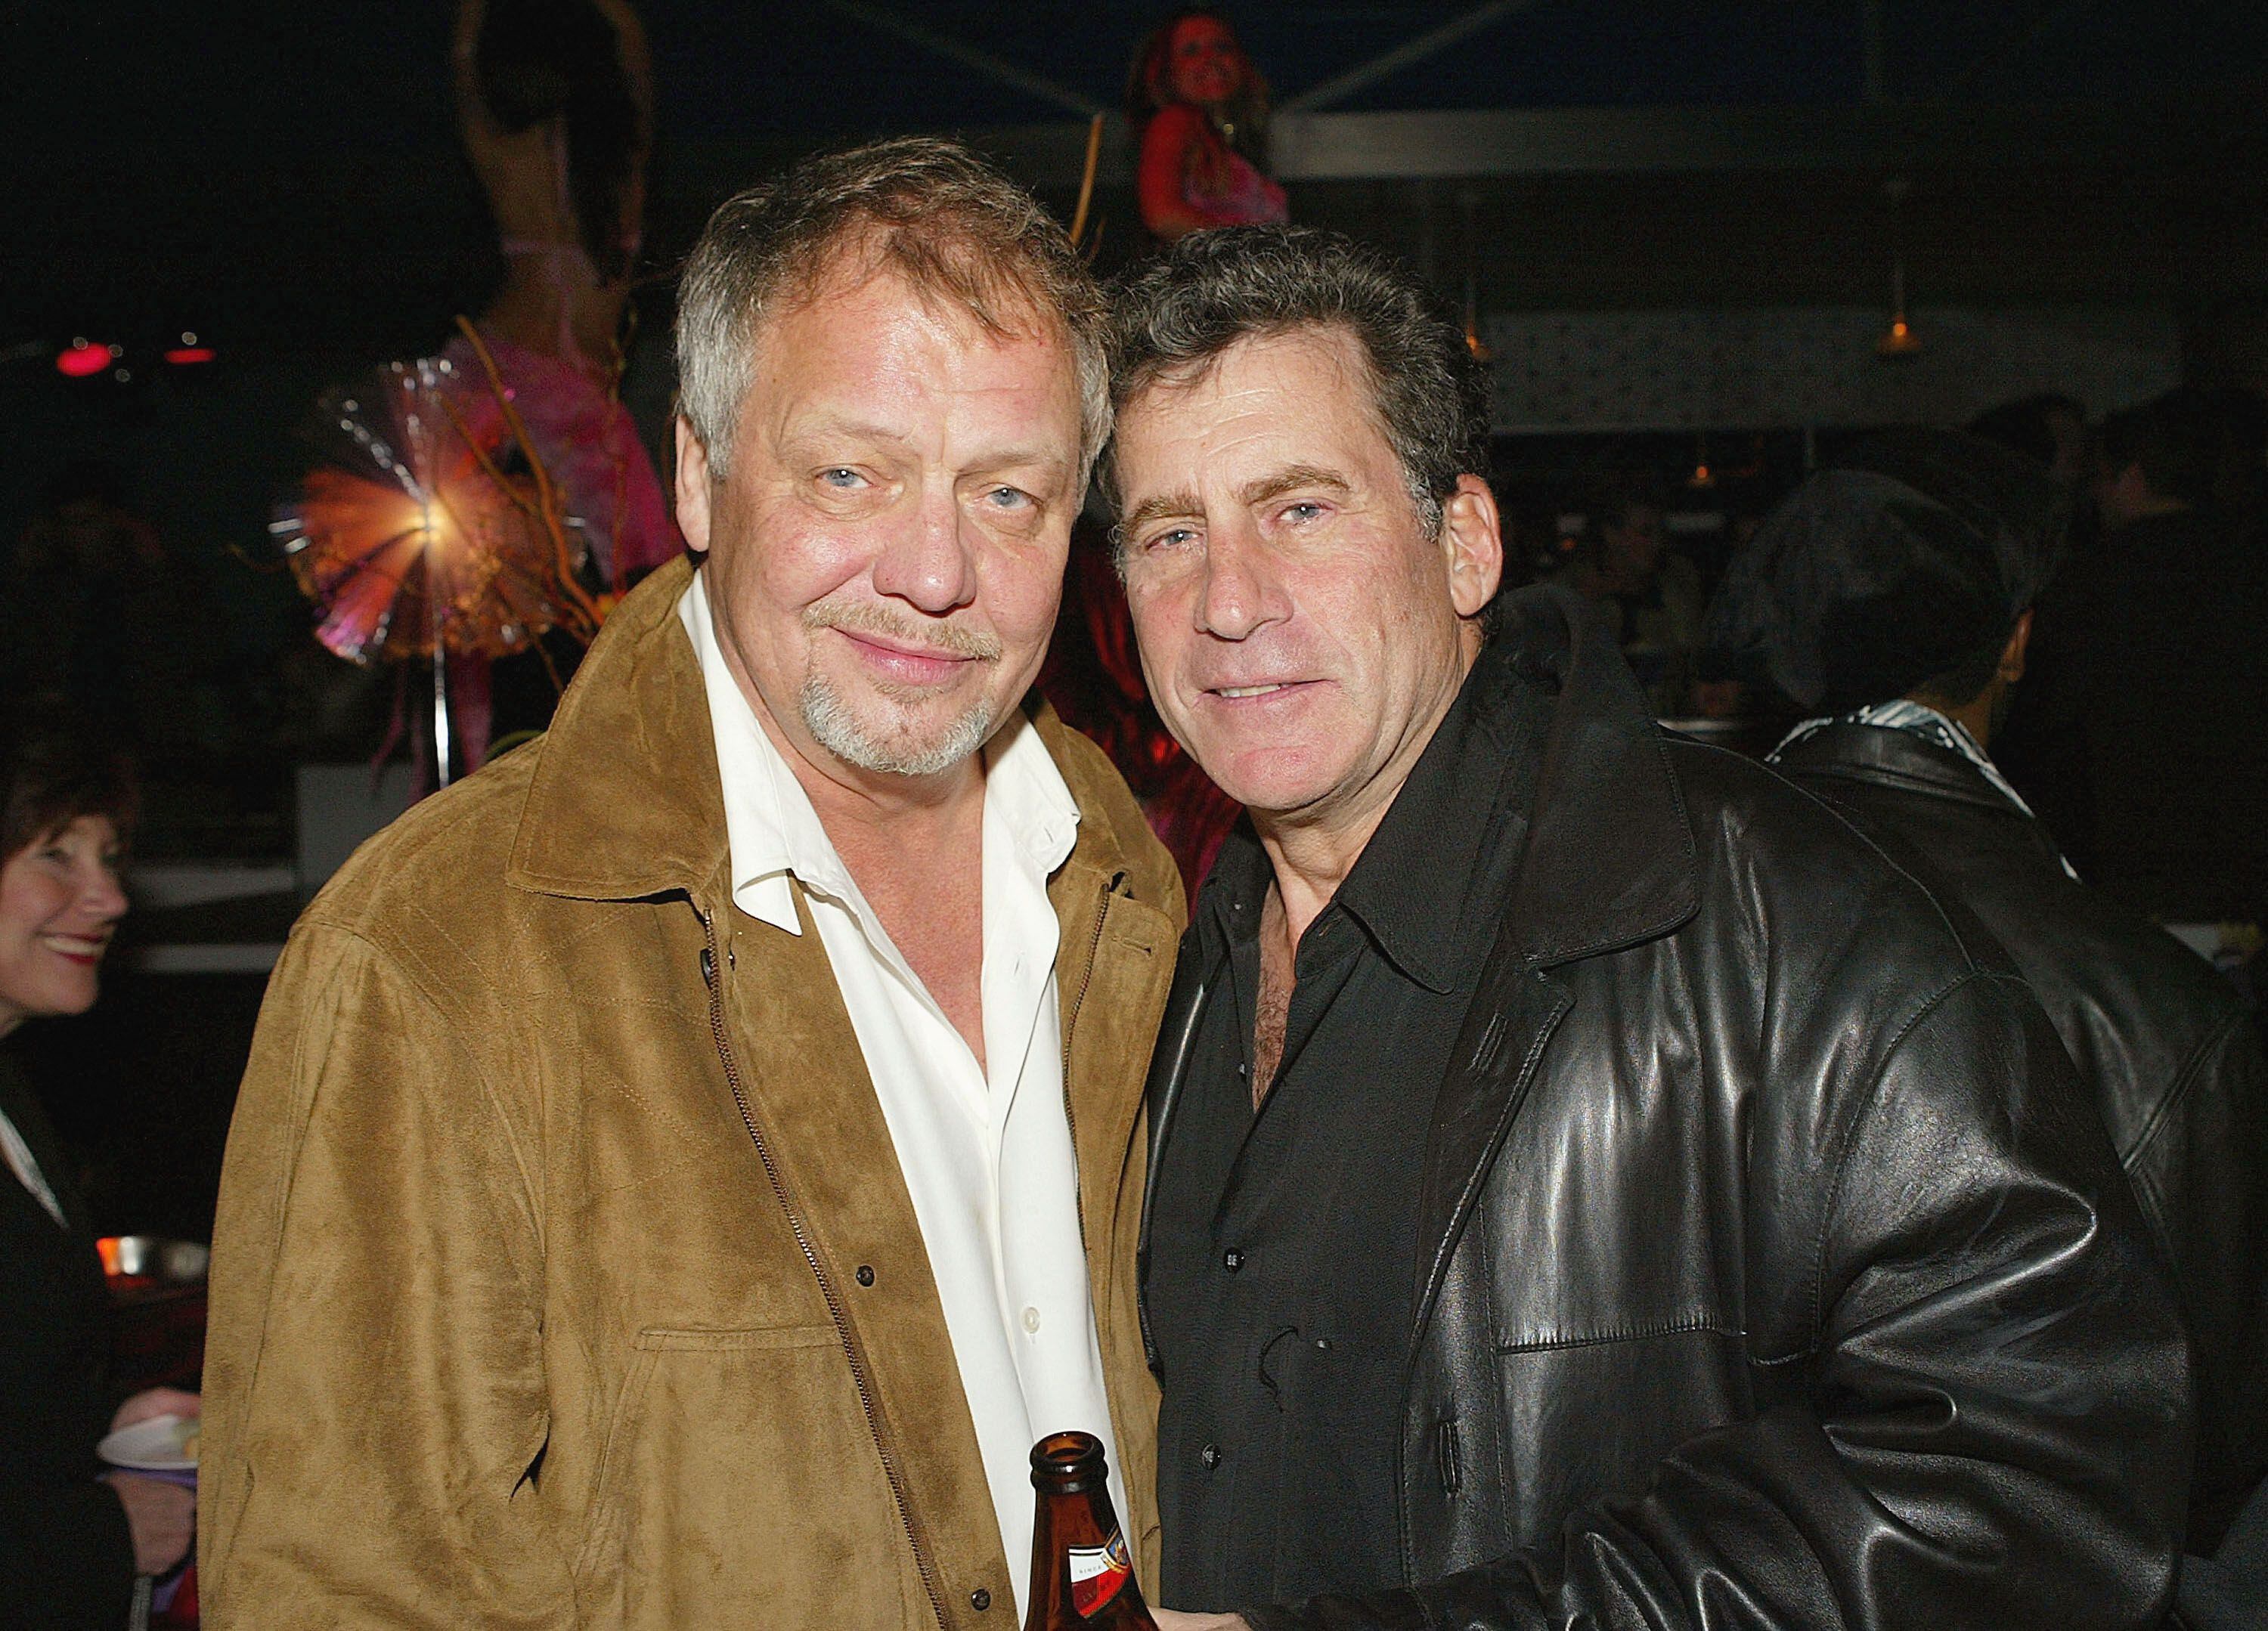 Los actores David Soul y Paul Micheal Glaser encarnaron a la pareja de policías en la recordada serie 'Starsky and Hutch'.  Juntos asistieron al estreno de la película, basada en el programa de televisión.
